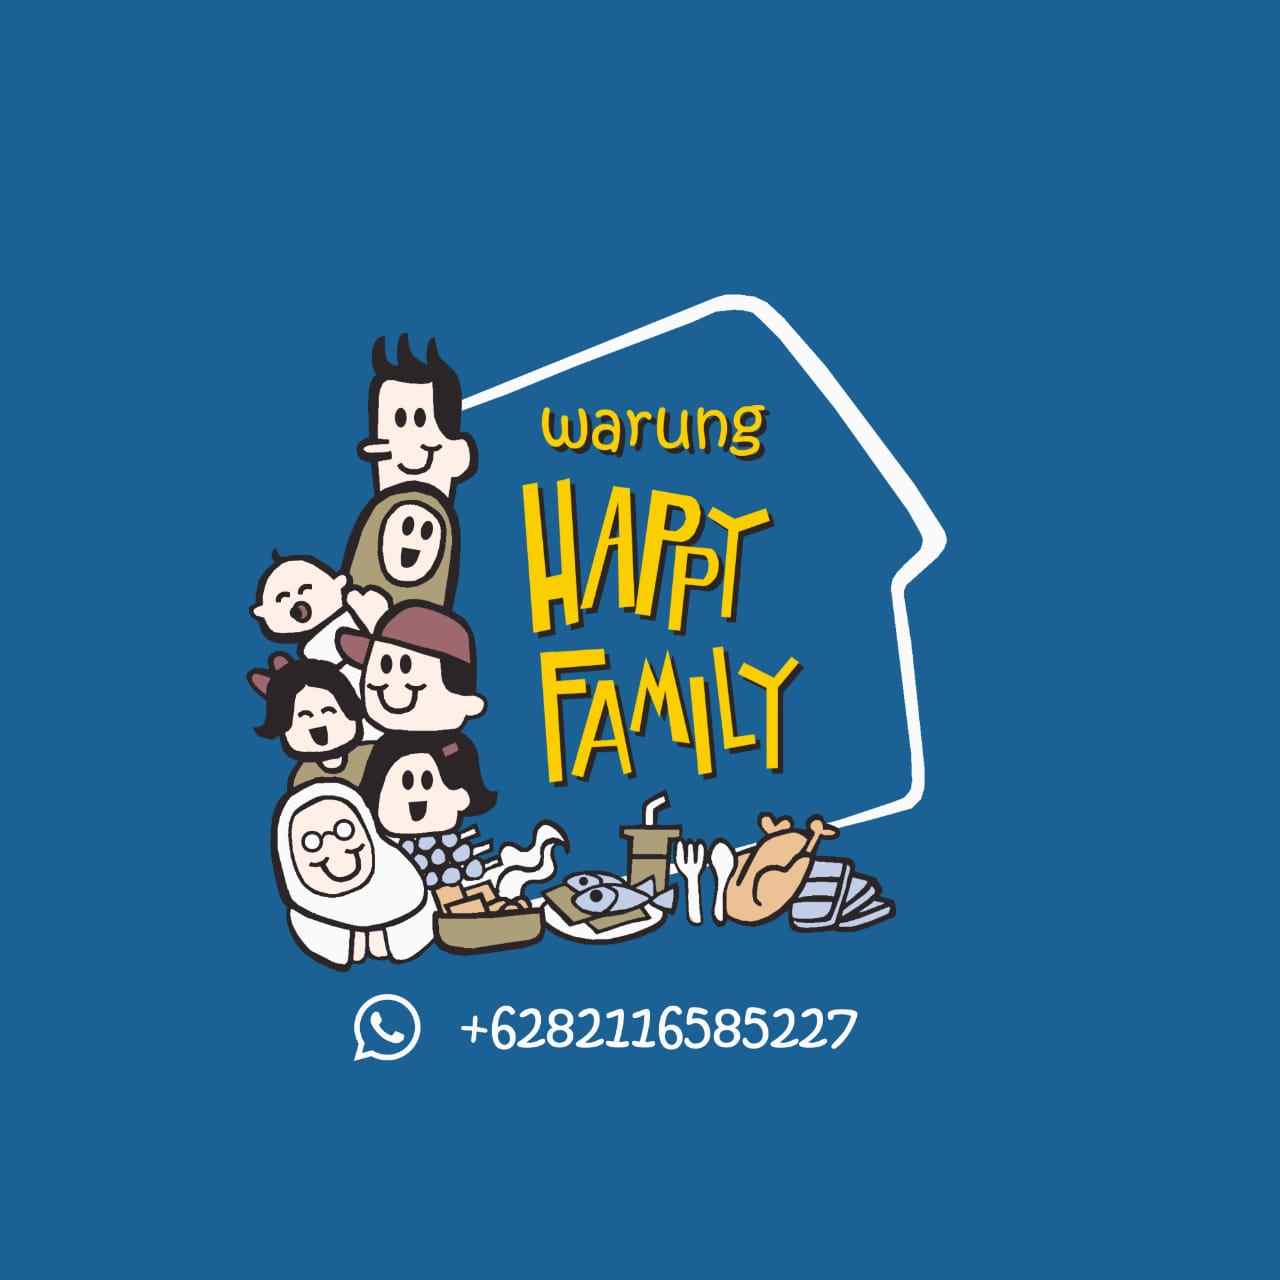 Warung Happy Family